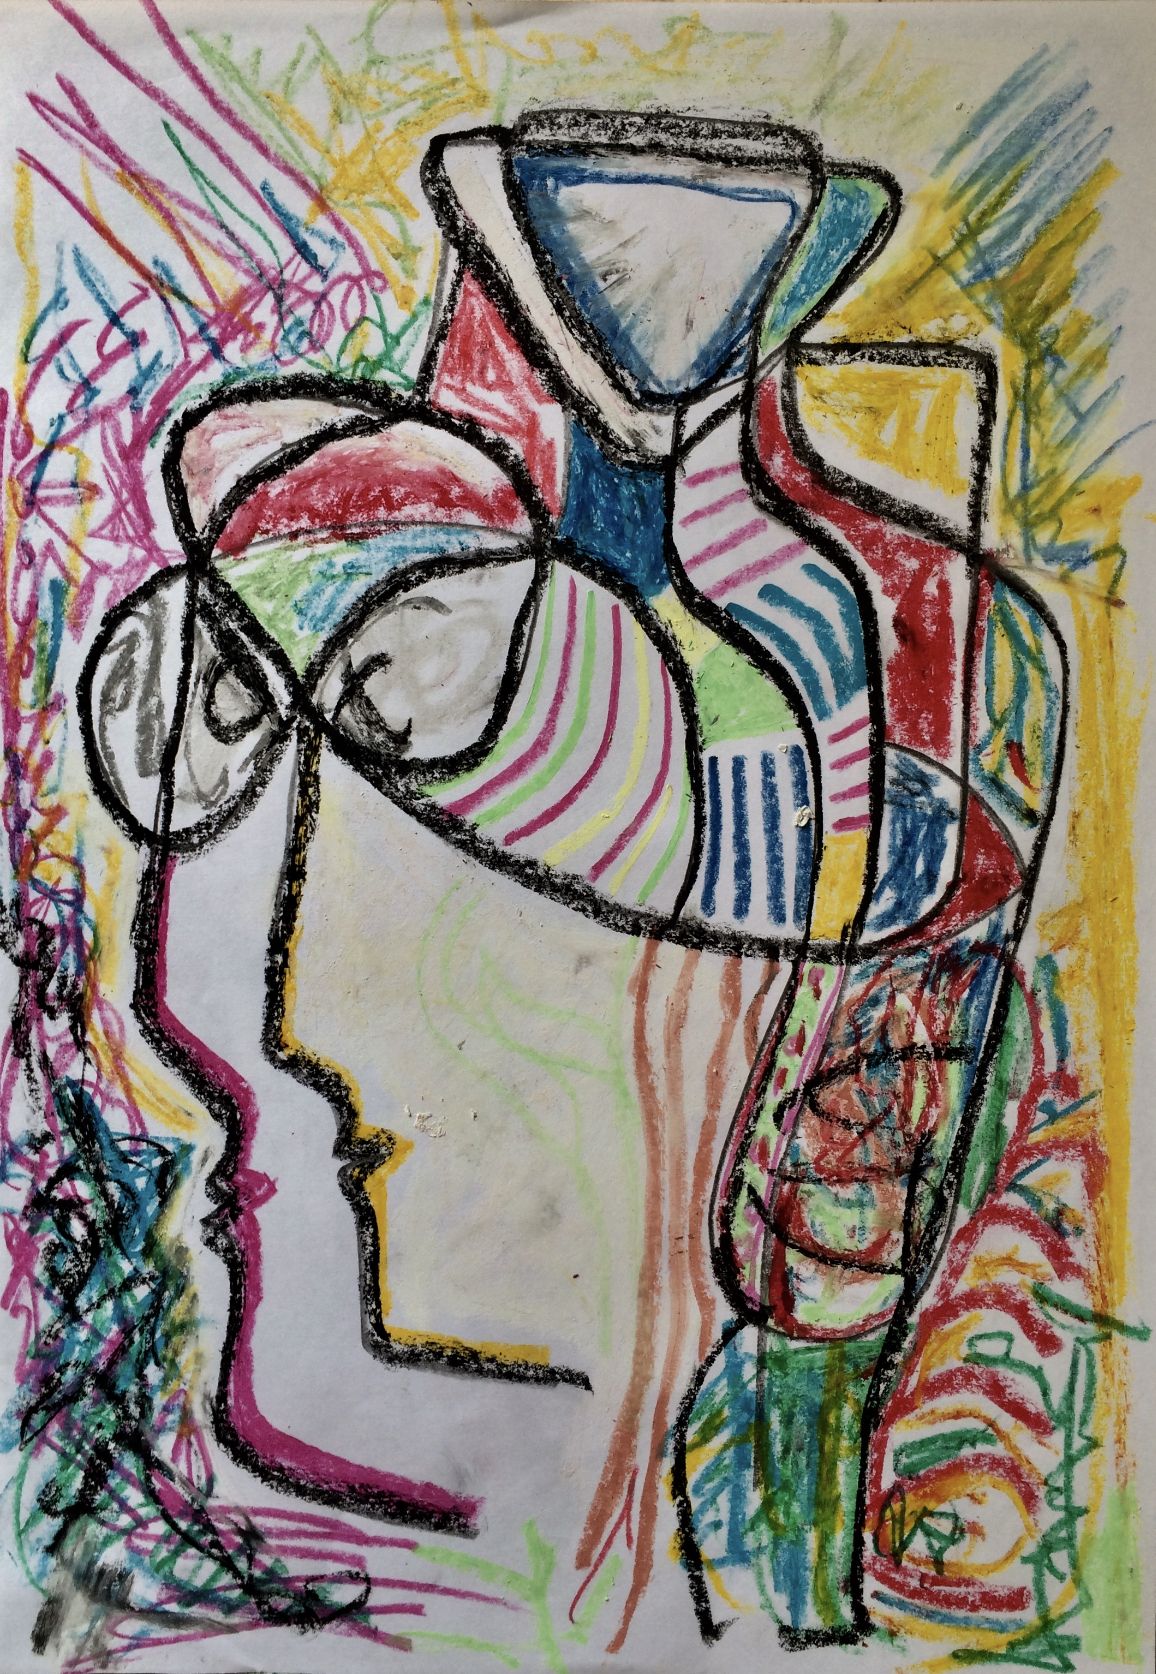 Работа художника Бориса Михайловича Епифанова “Очки на двоих», пастель, 40х30